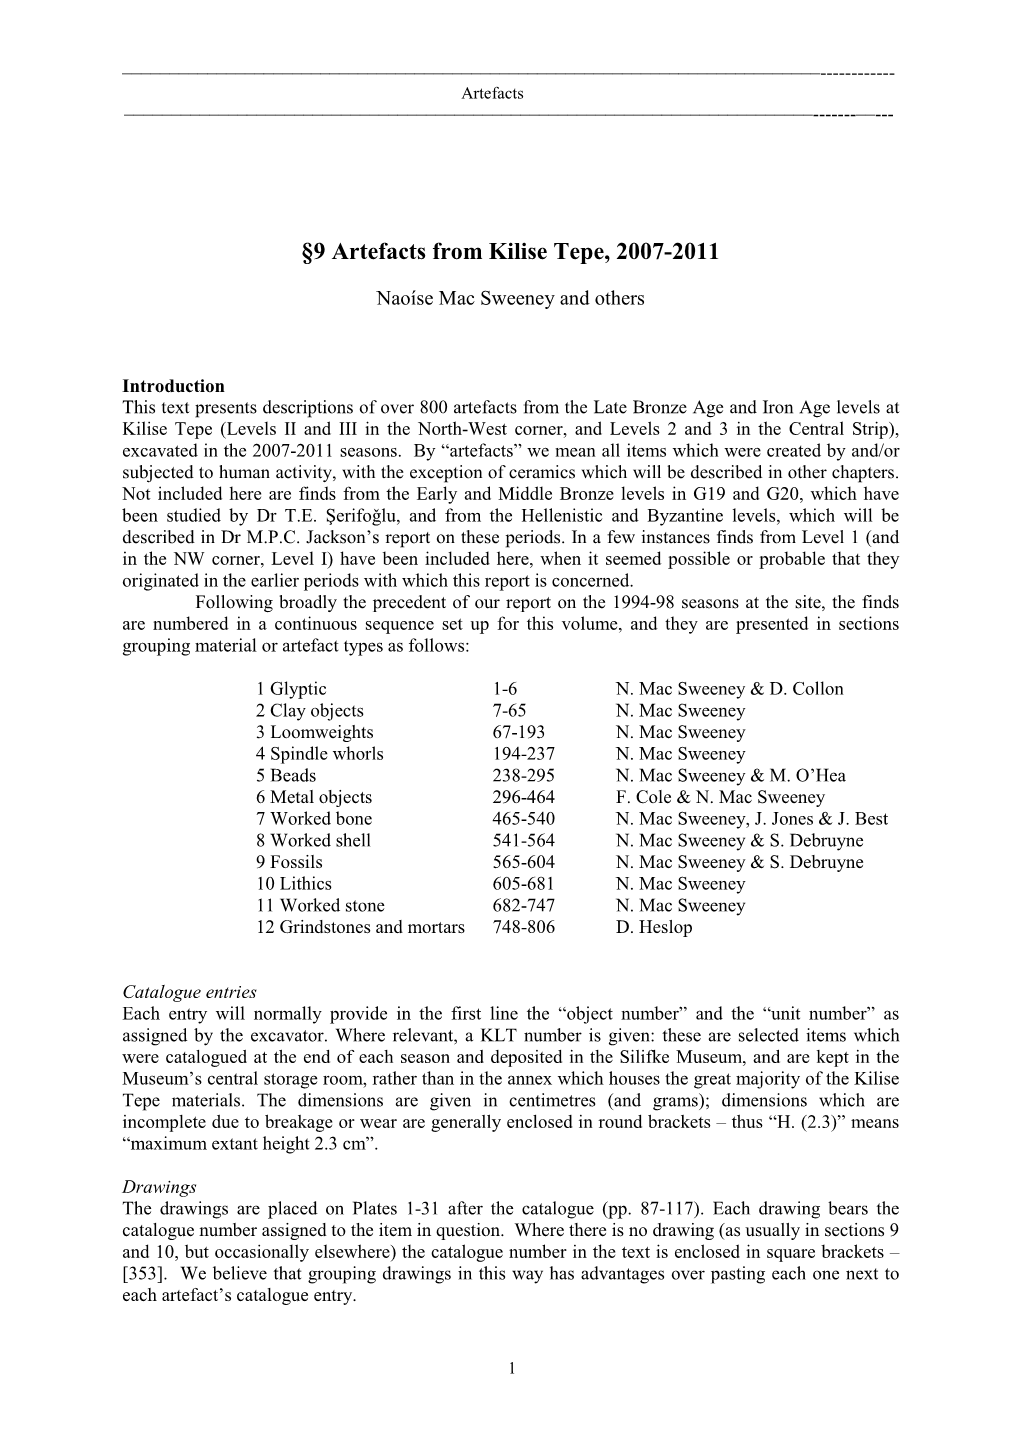 §9 Artefacts from Kilise Tepe, 2007-2011